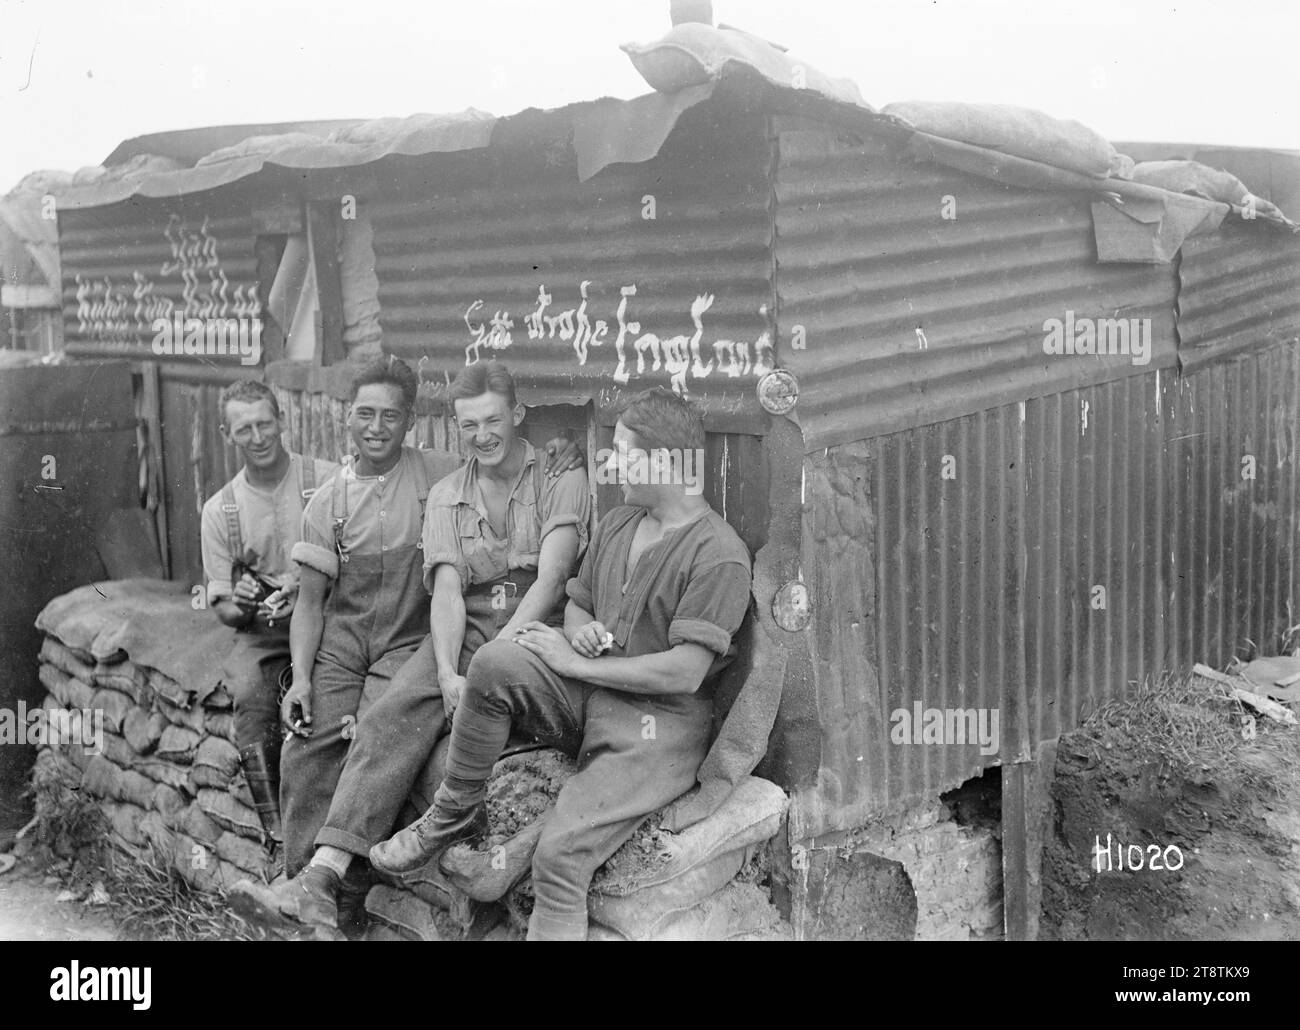 Soldati neozelandesi fuori da una capanna tedesca catturata, quattro soldati della prima guerra mondiale seduti su un muro di sacchi di sabbia di fronte a una capanna di ferro ondulato che fu catturata dai tedeschi e trasformata nel loro quartier generale. Fotografia scattata tra il 1914 e il 1918 Foto Stock